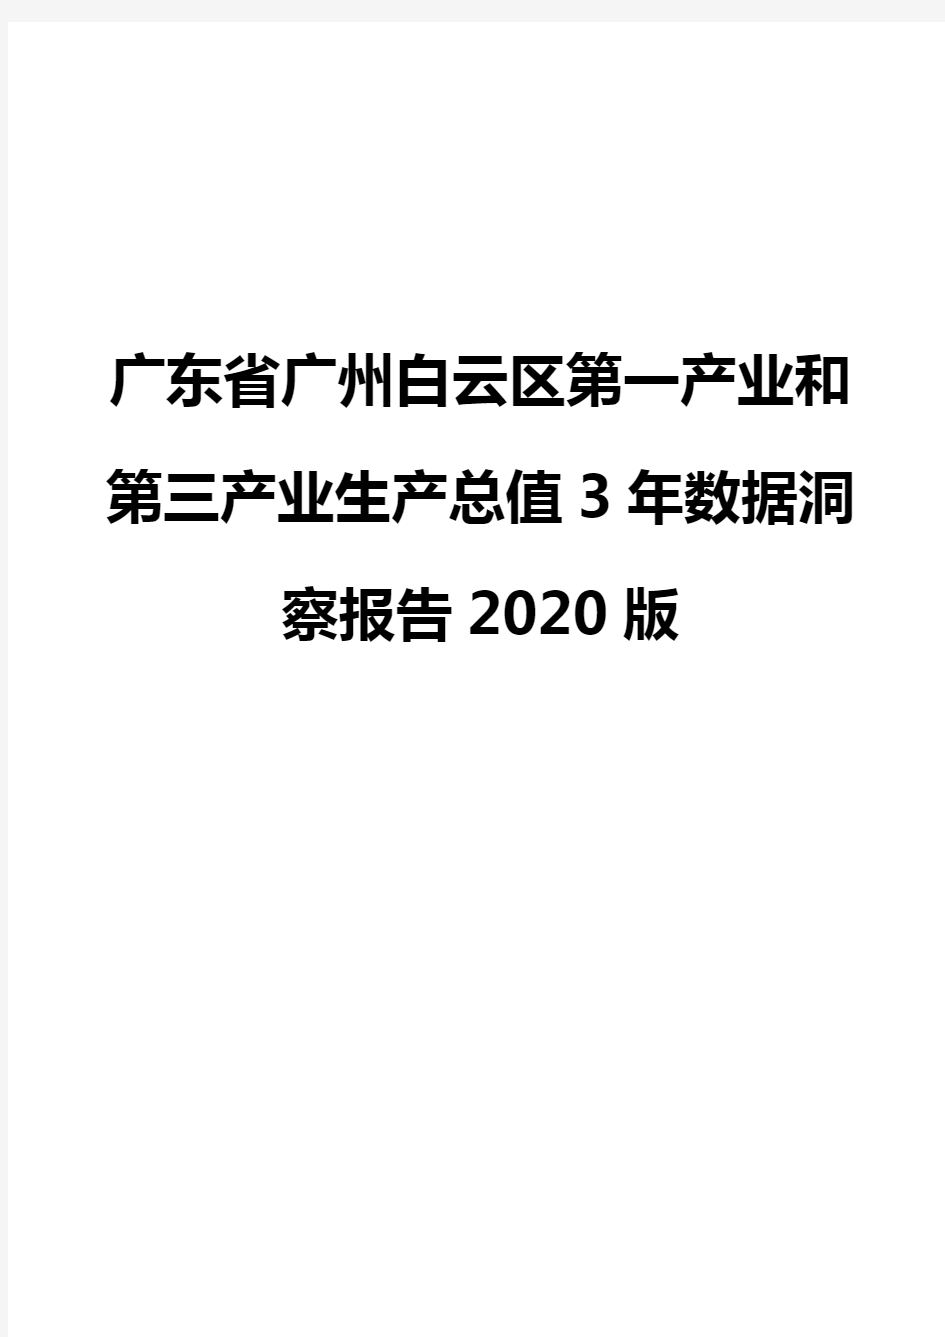 广东省广州白云区第一产业和第三产业生产总值3年数据洞察报告2020版